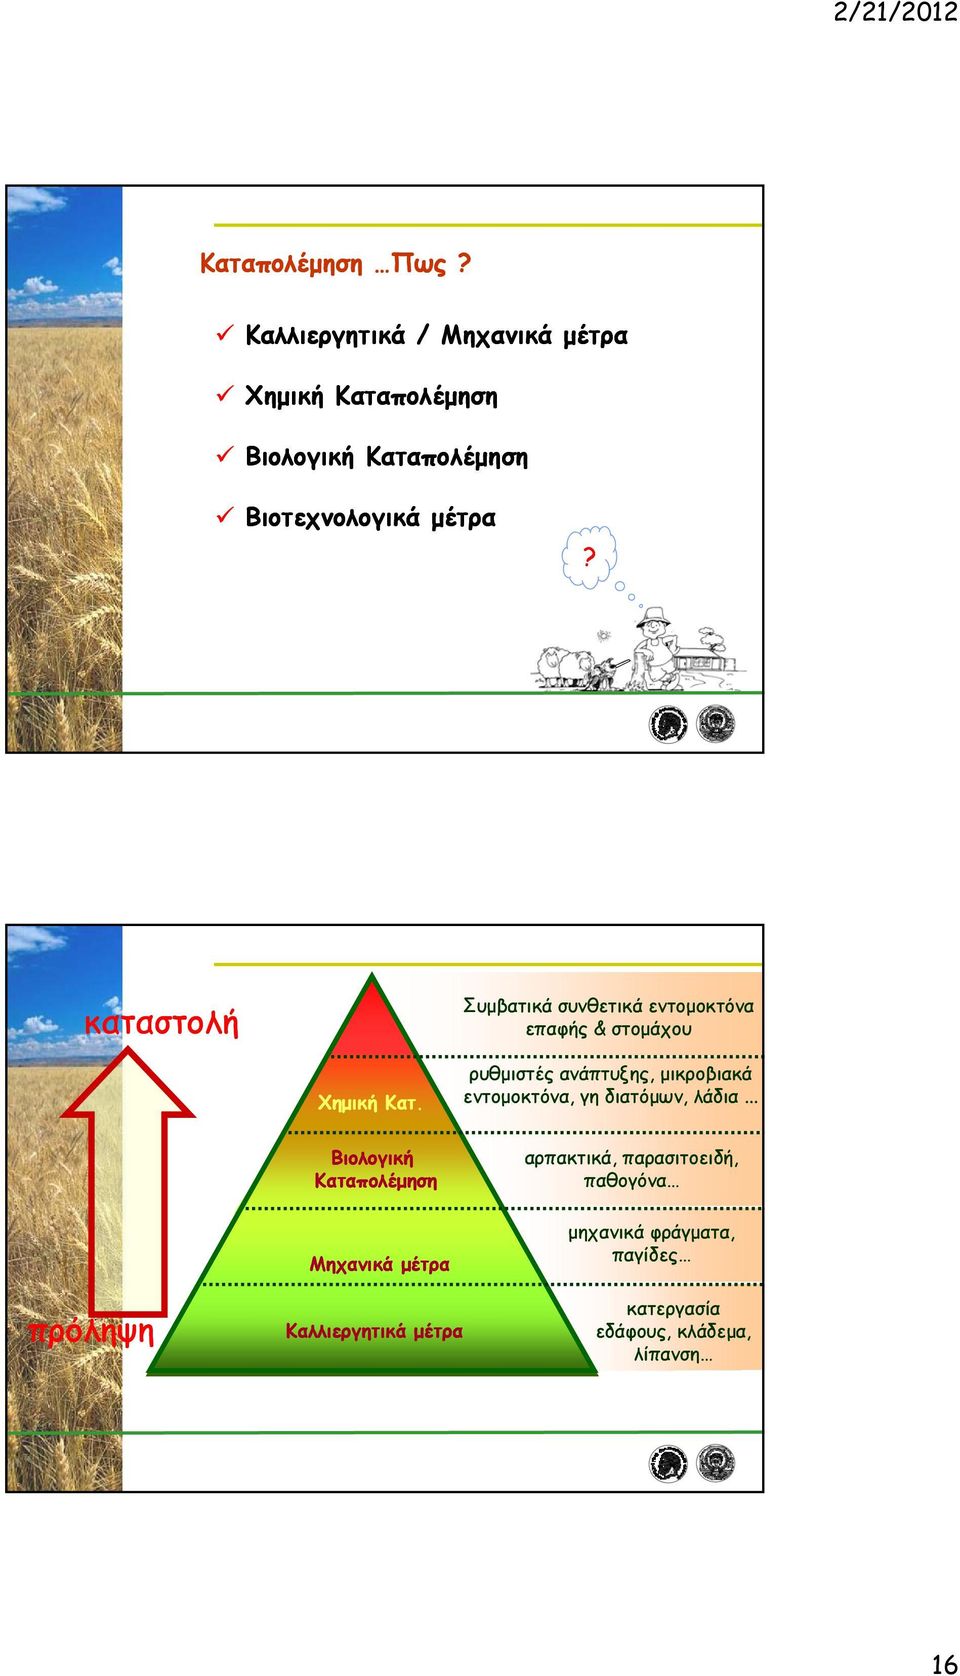 Βιολογική Μηχανικά μέτρα ρυθμιστές ανάπτυξης, μικροβιακά εντομοκτόνα, γη διατόμων, λάδια.